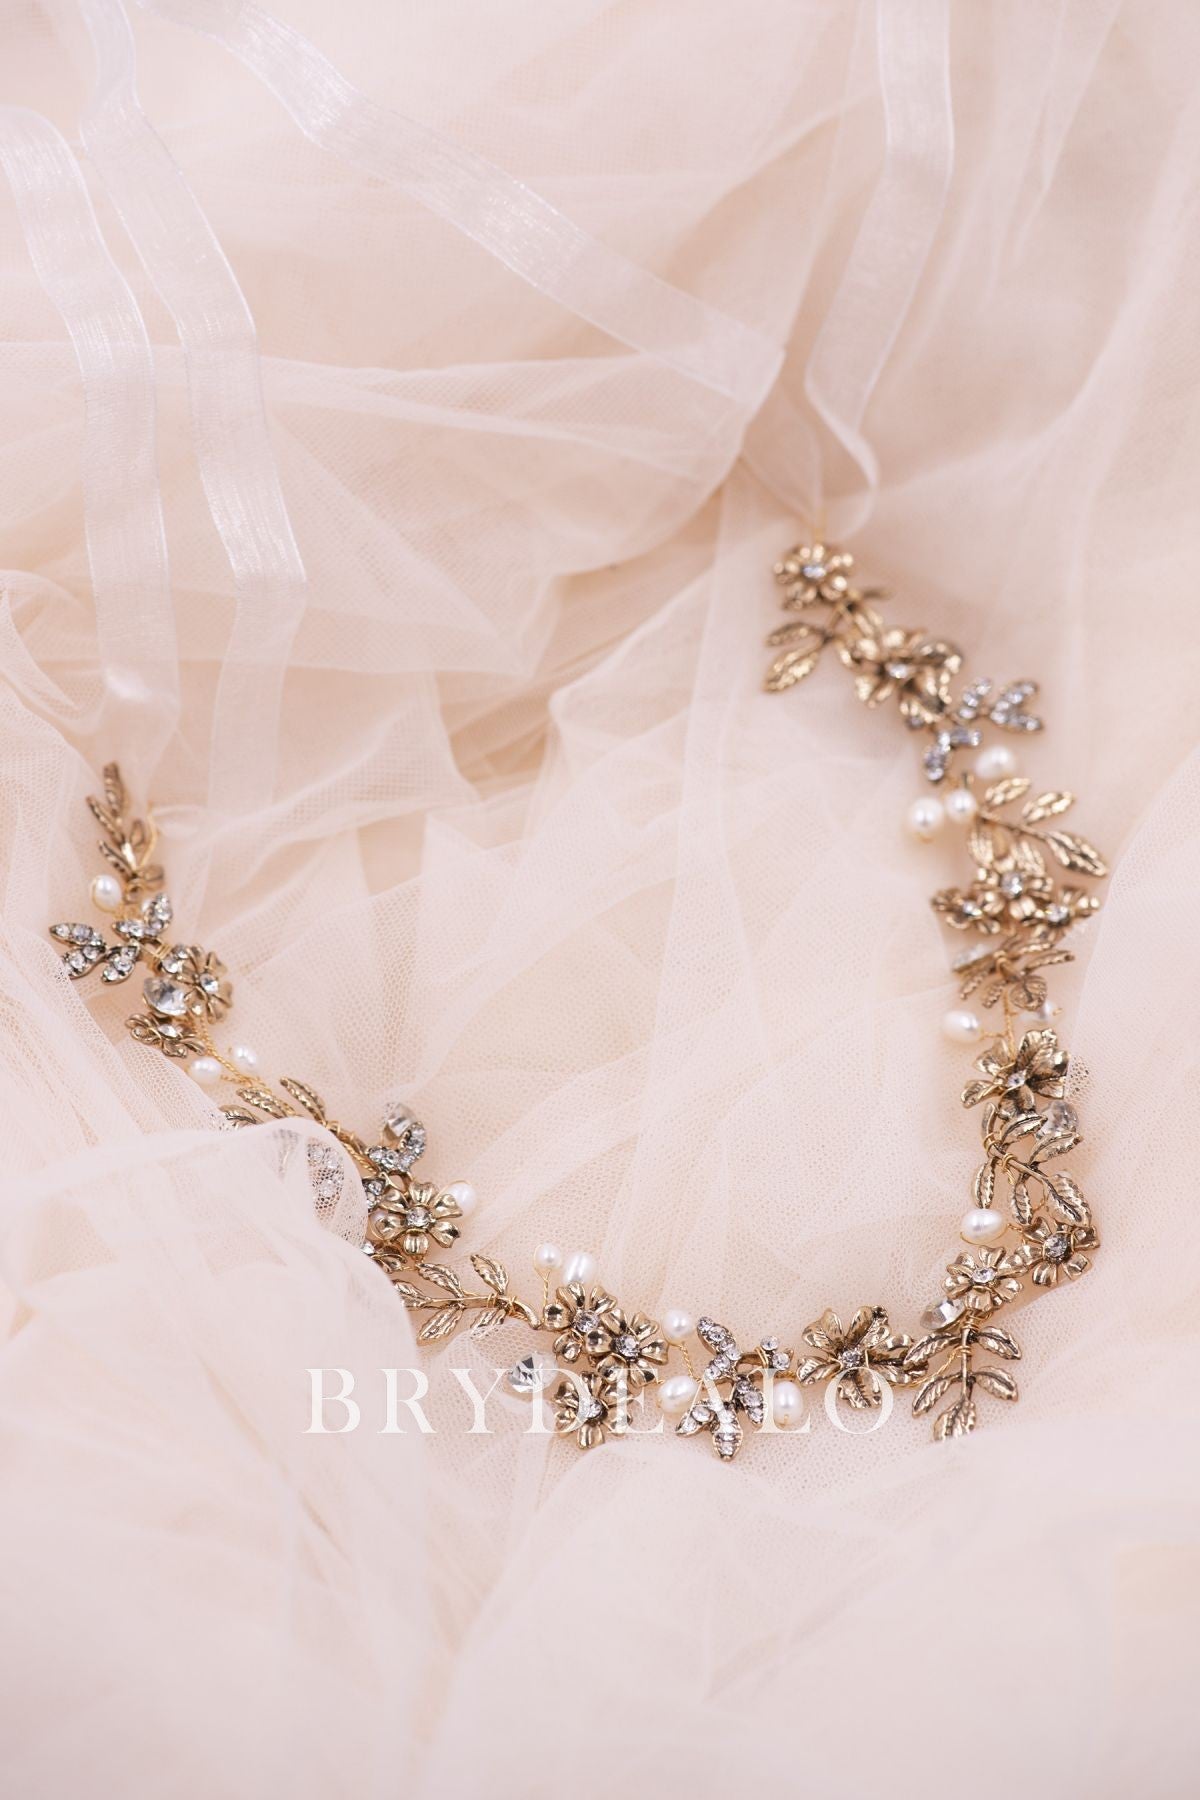 Gold Leaf Pearls Rhinestones Bridal Wire Headband